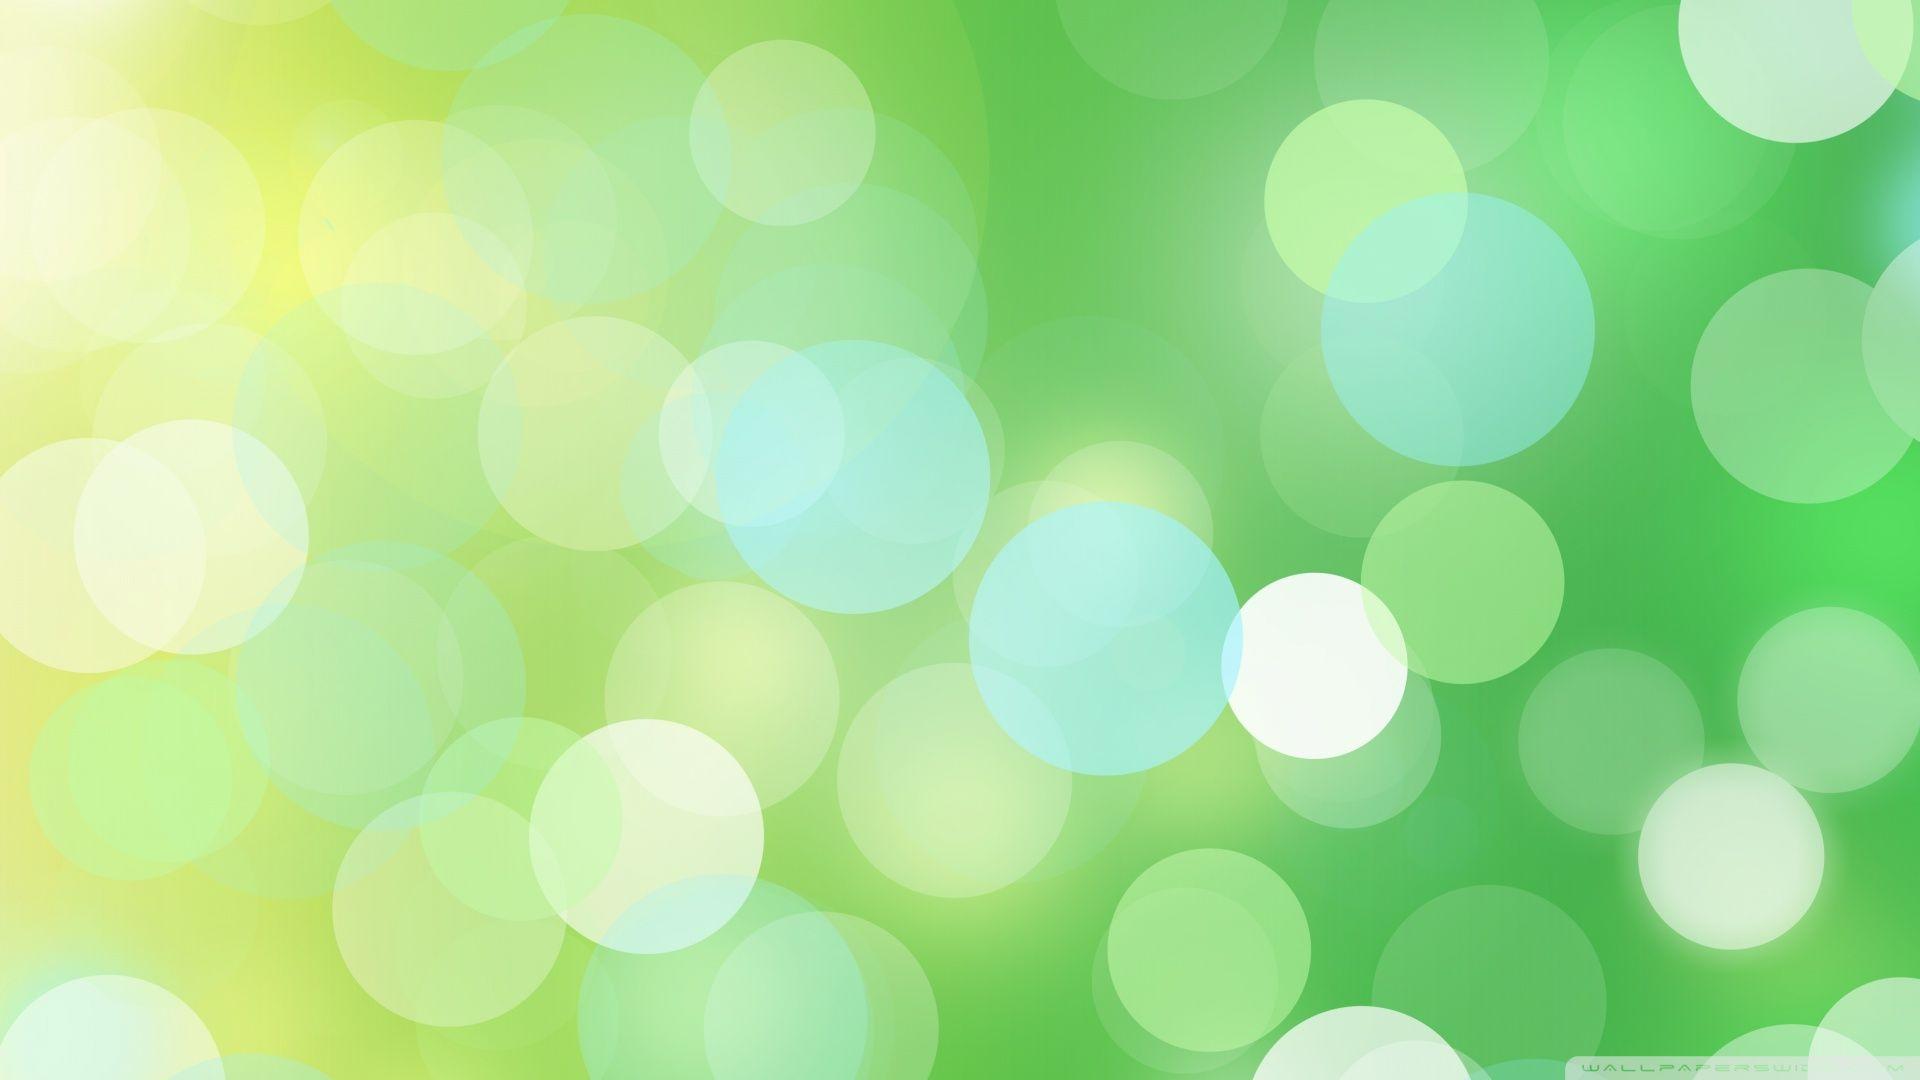 Super Light Green Wallpapers - Top Free Super Light Green Backgrounds -  WallpaperAccess